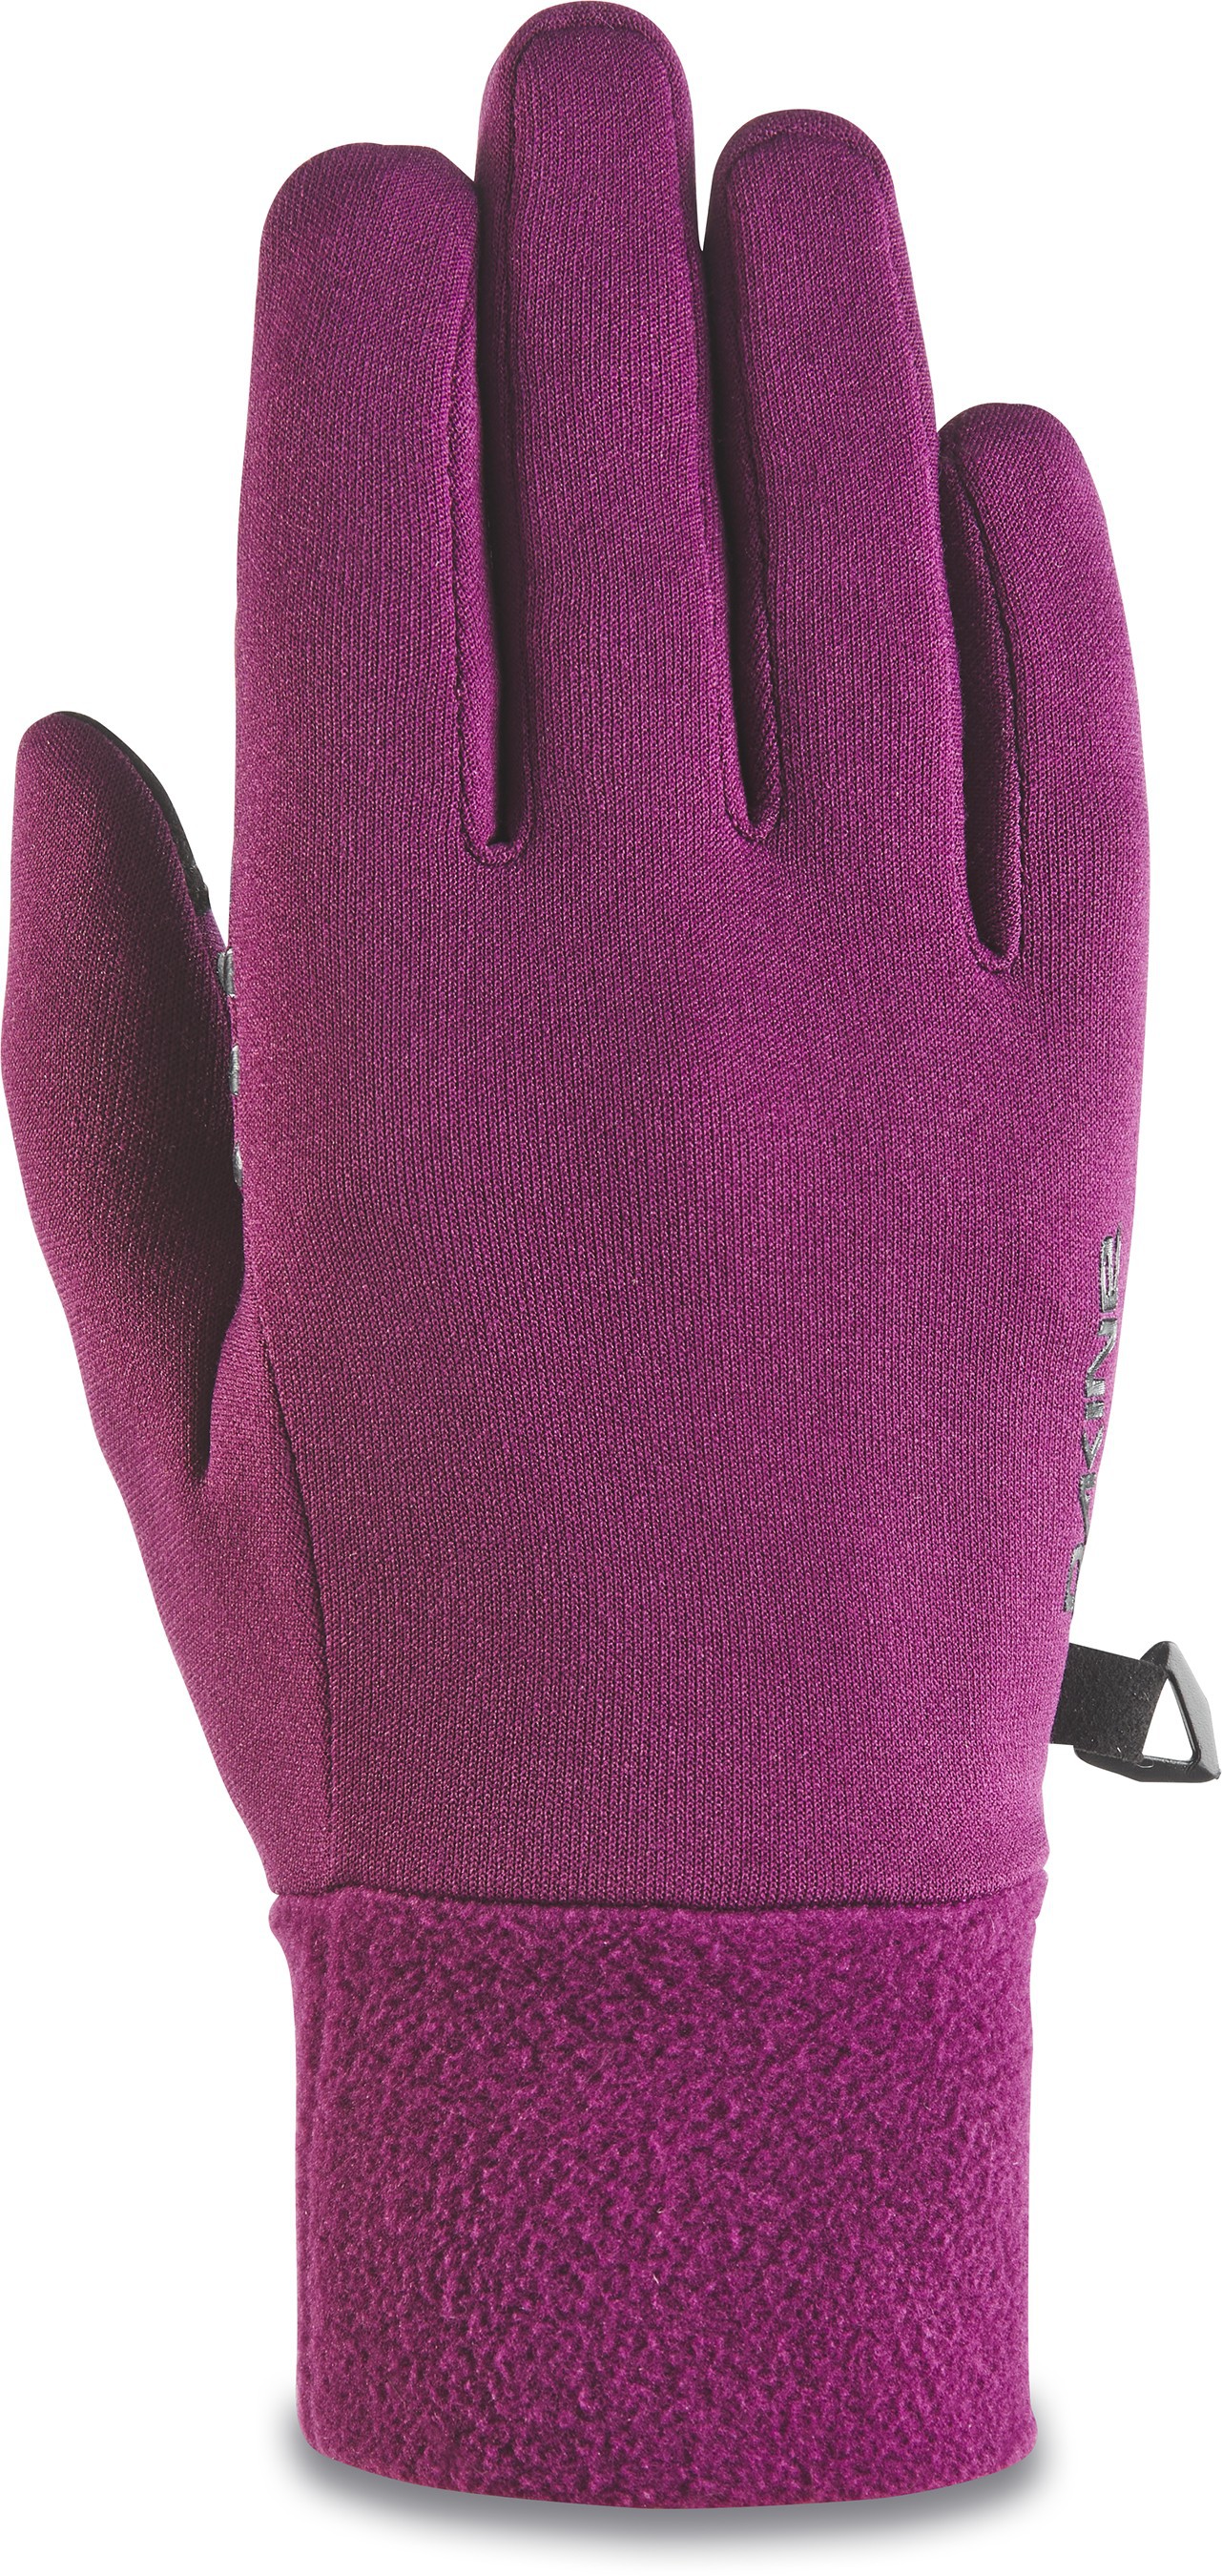 Storm Liner Glove - Women's